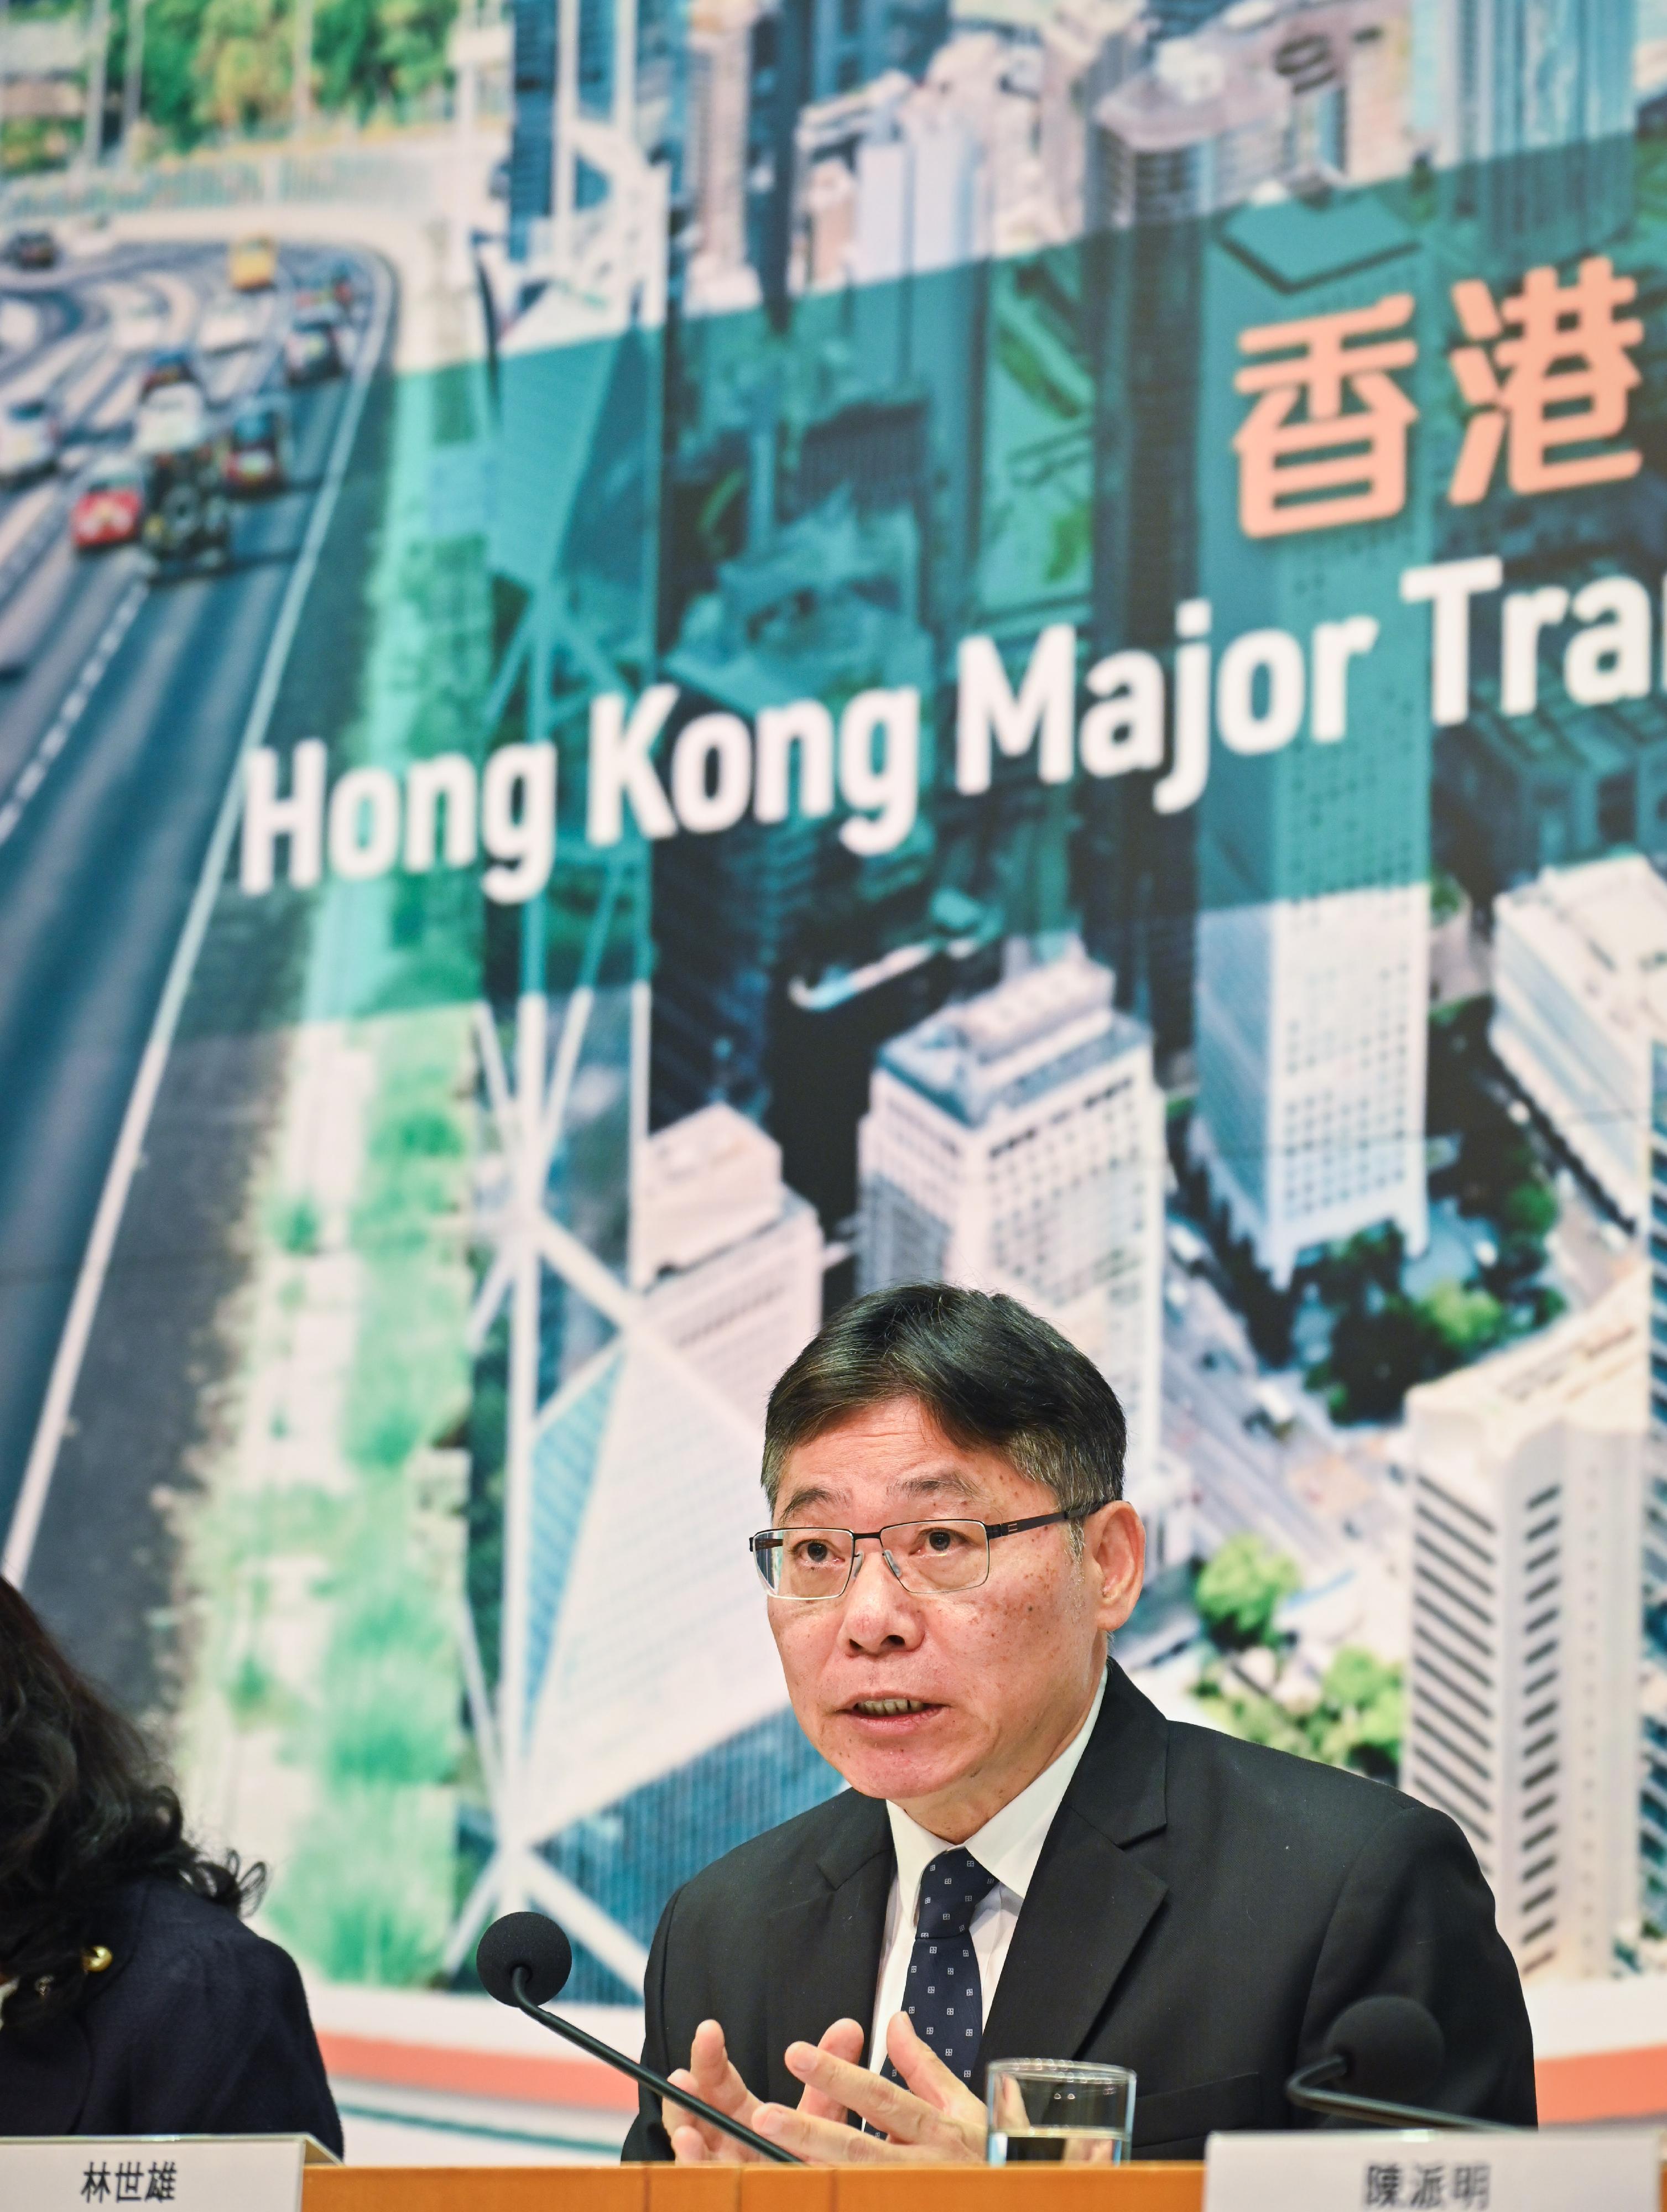 運輸及物流局局長林世雄今日（十二月十二日）在《香港主要運輸基建發展藍圖》記者會上講解藍圖的願景與目標。